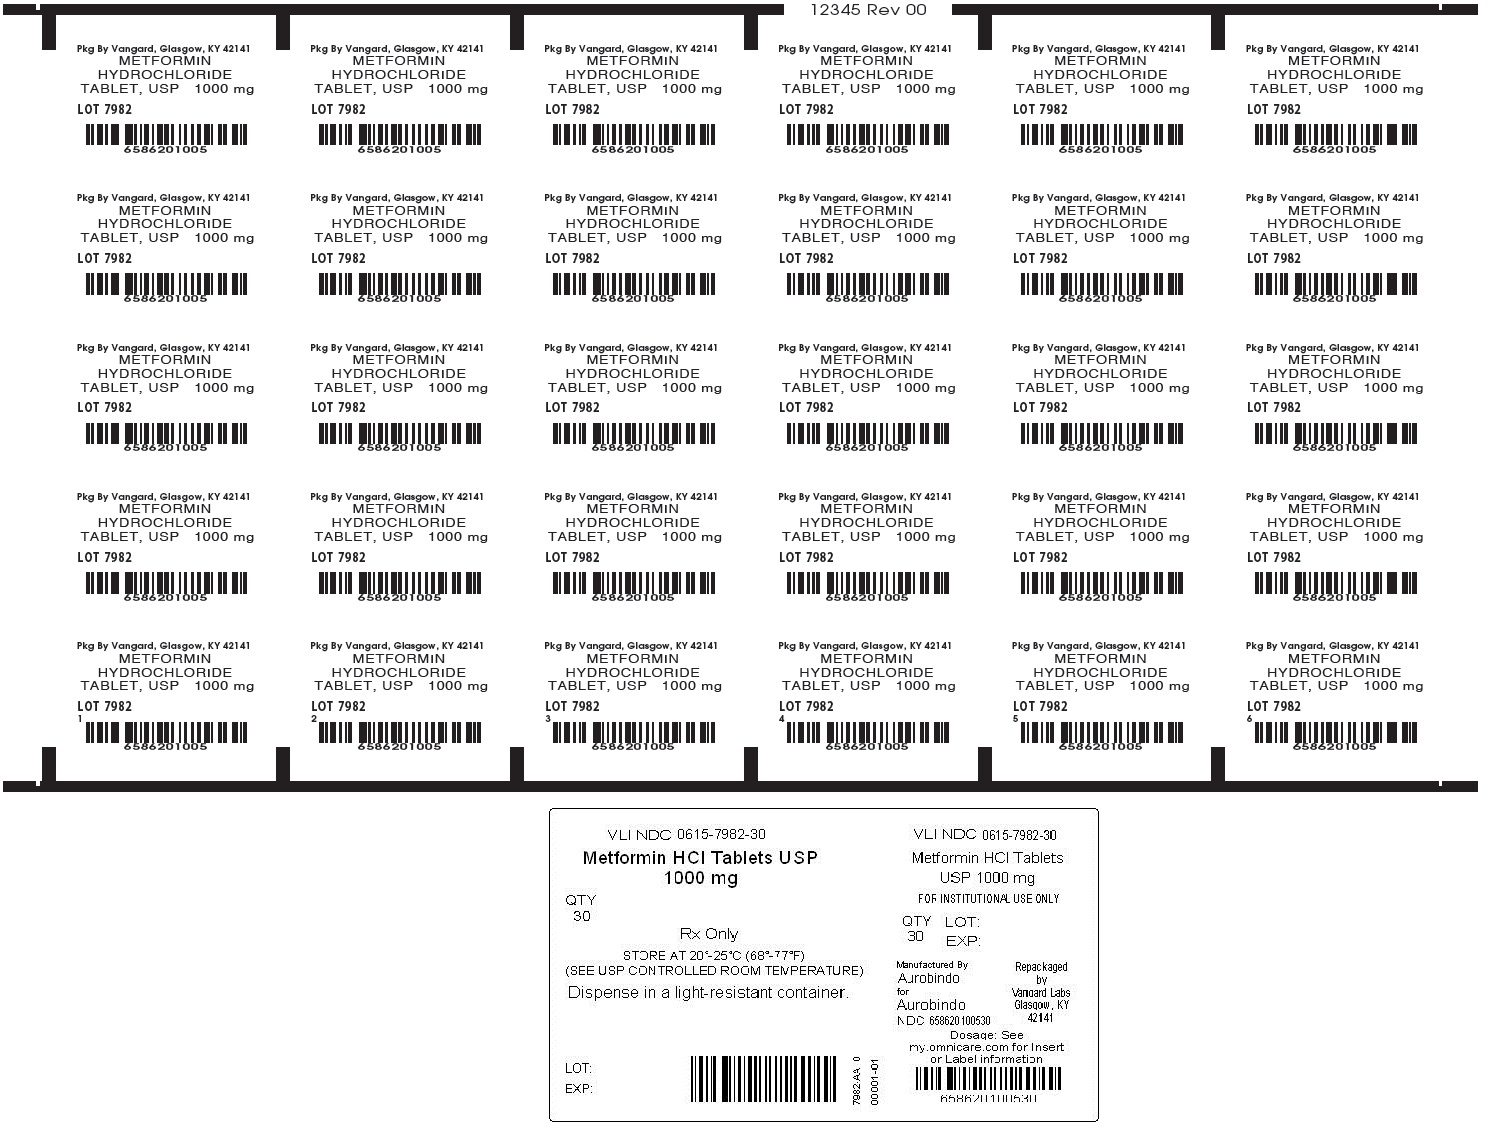 Metformin 1000mg unit dose label